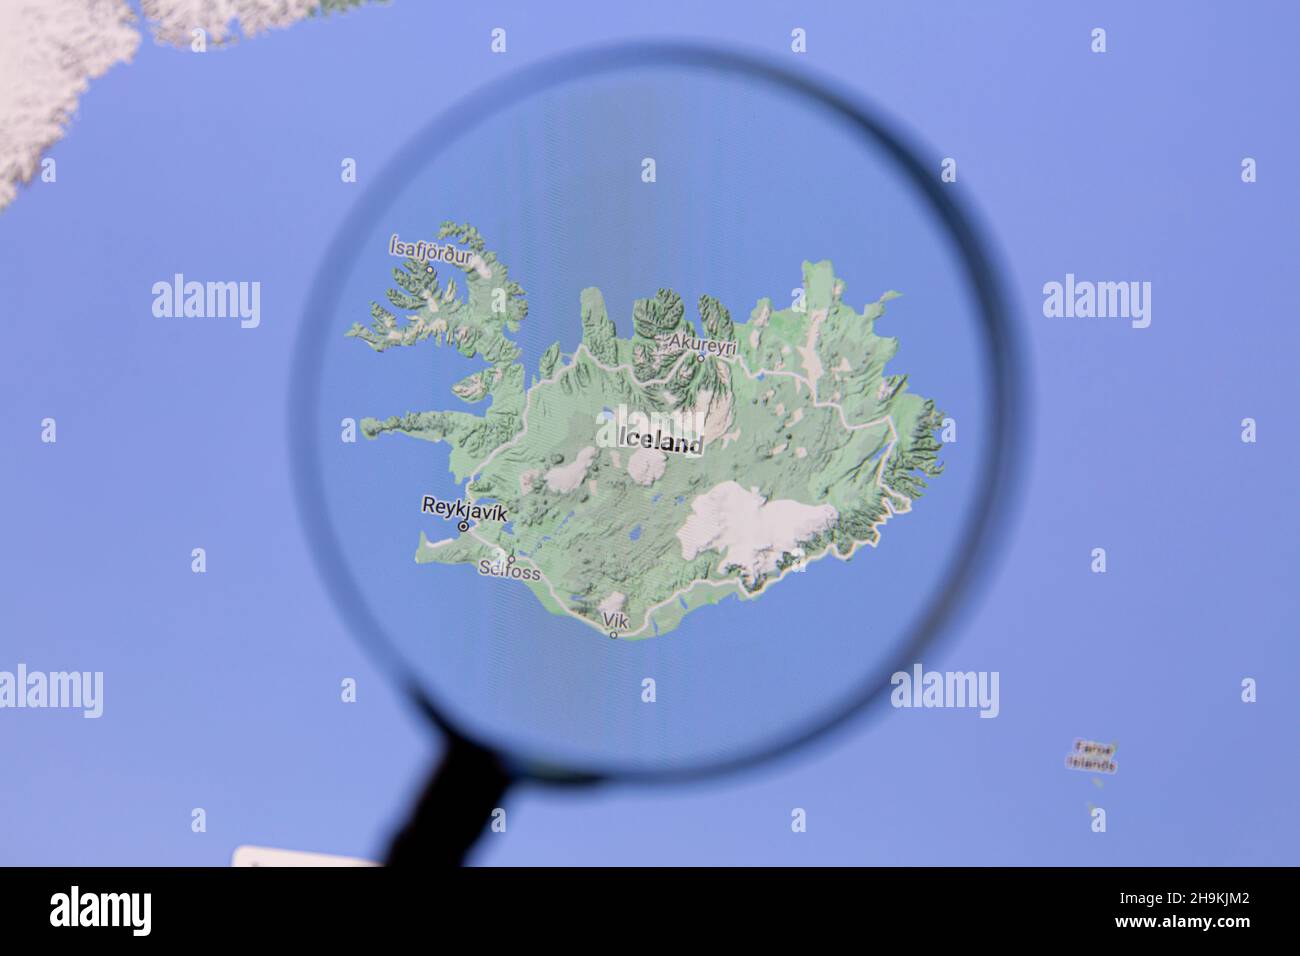 Ostersund, Suecia - 14 de septiembre de 2021: Islandia en Google Maps bajo una lupa.. Islandia es un país insular nórdico en el Océano Atlántico Norte. Foto de stock